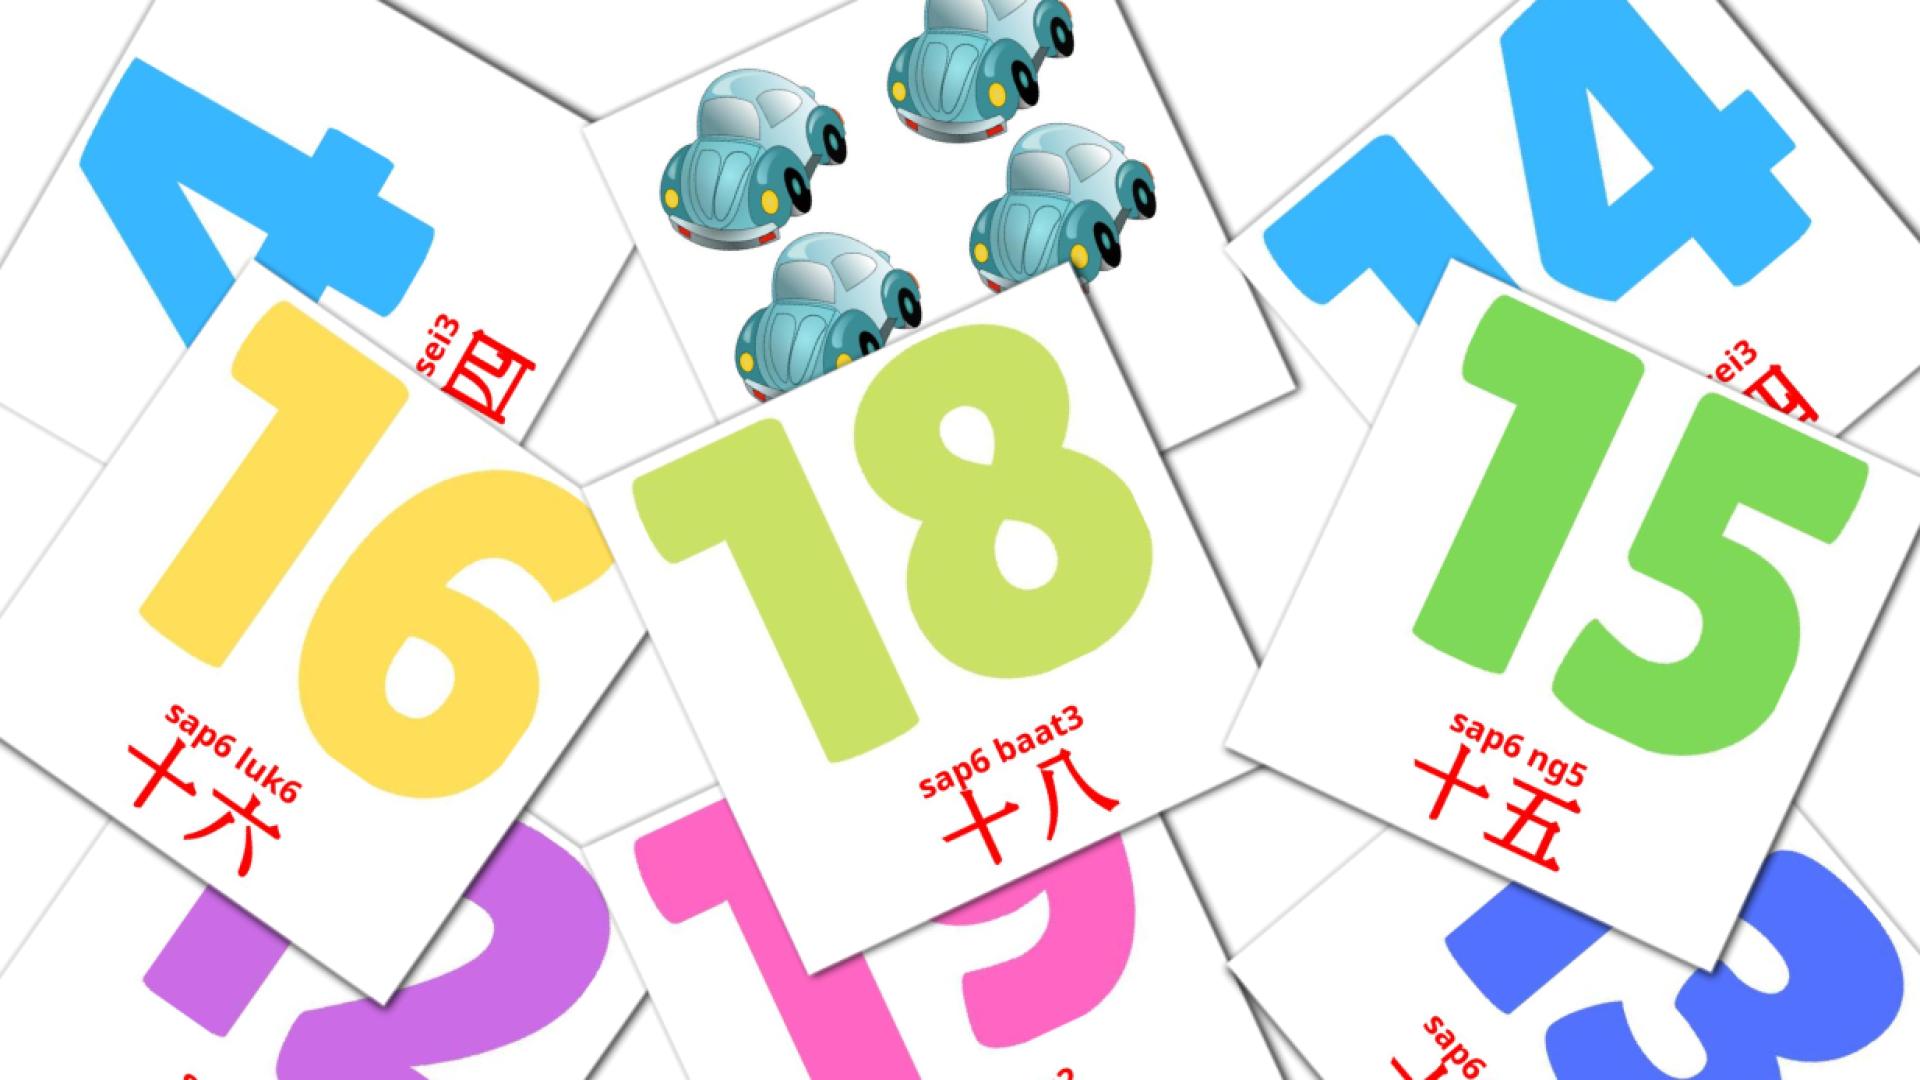 數字 sou3 zi6 kantonees(informeel) woordenschat flashcards